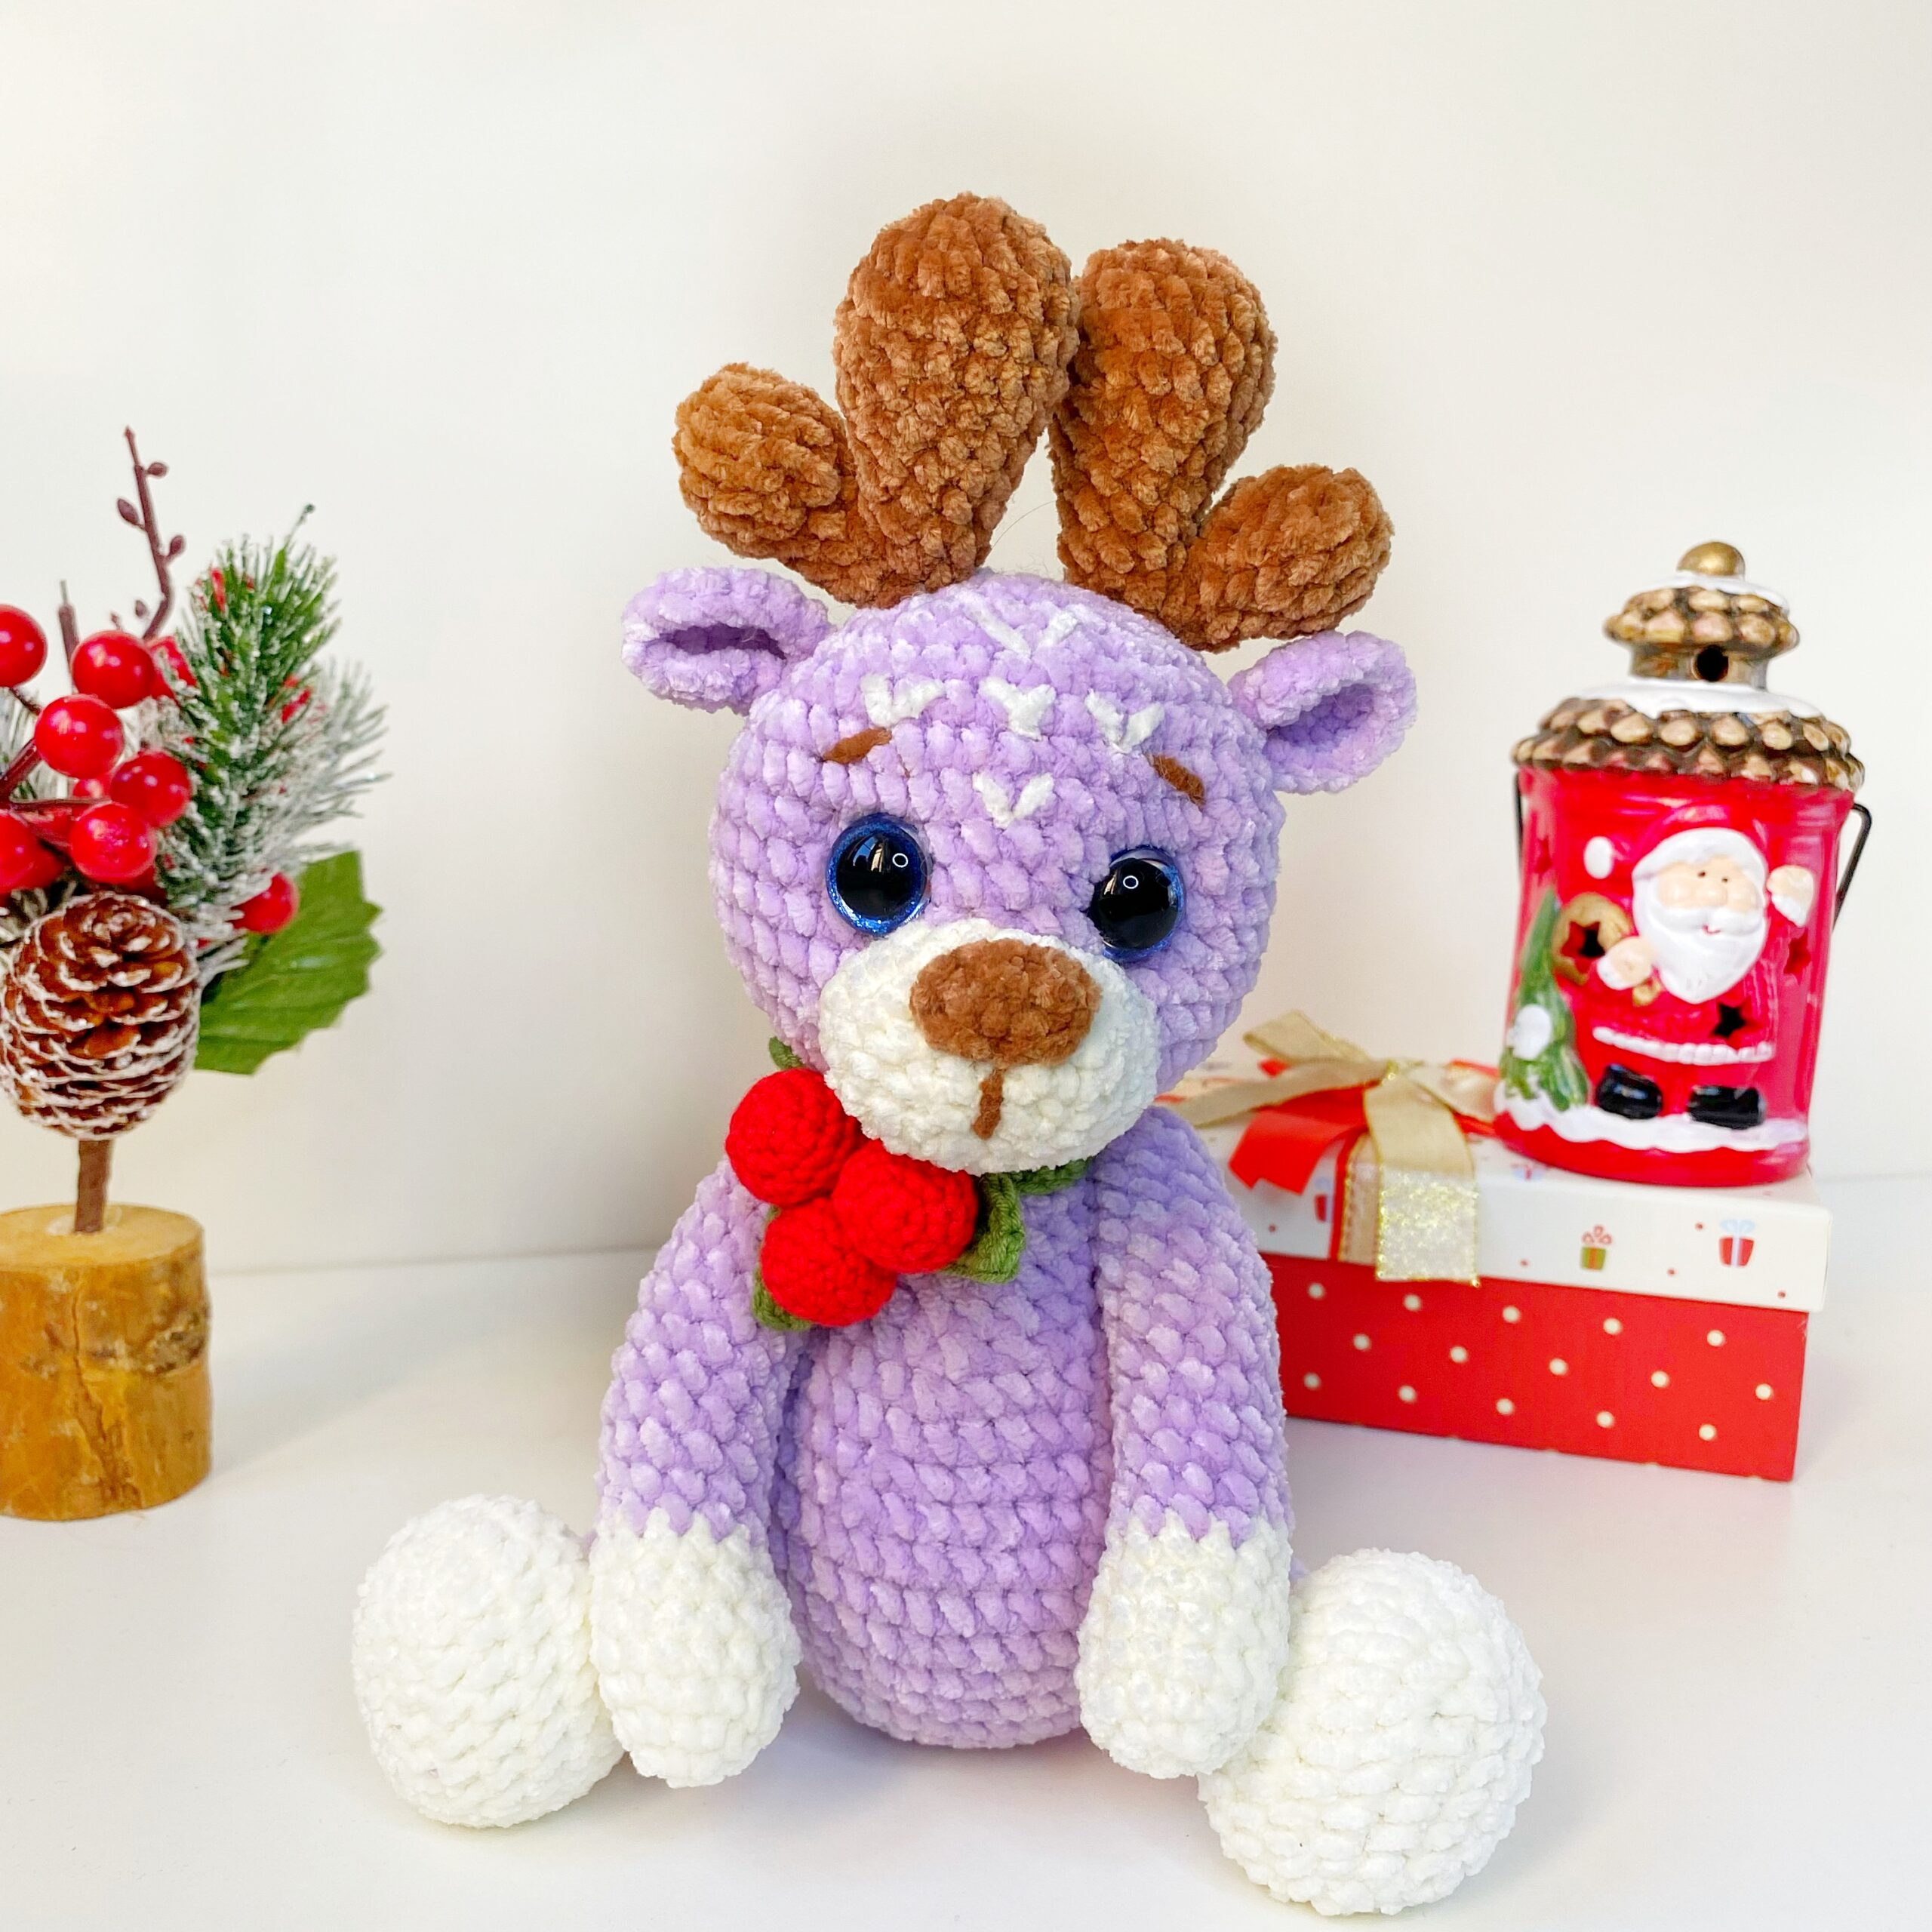 Weloille Santa Claus Crochet Cute Deer Christmas, Crochet Kit For